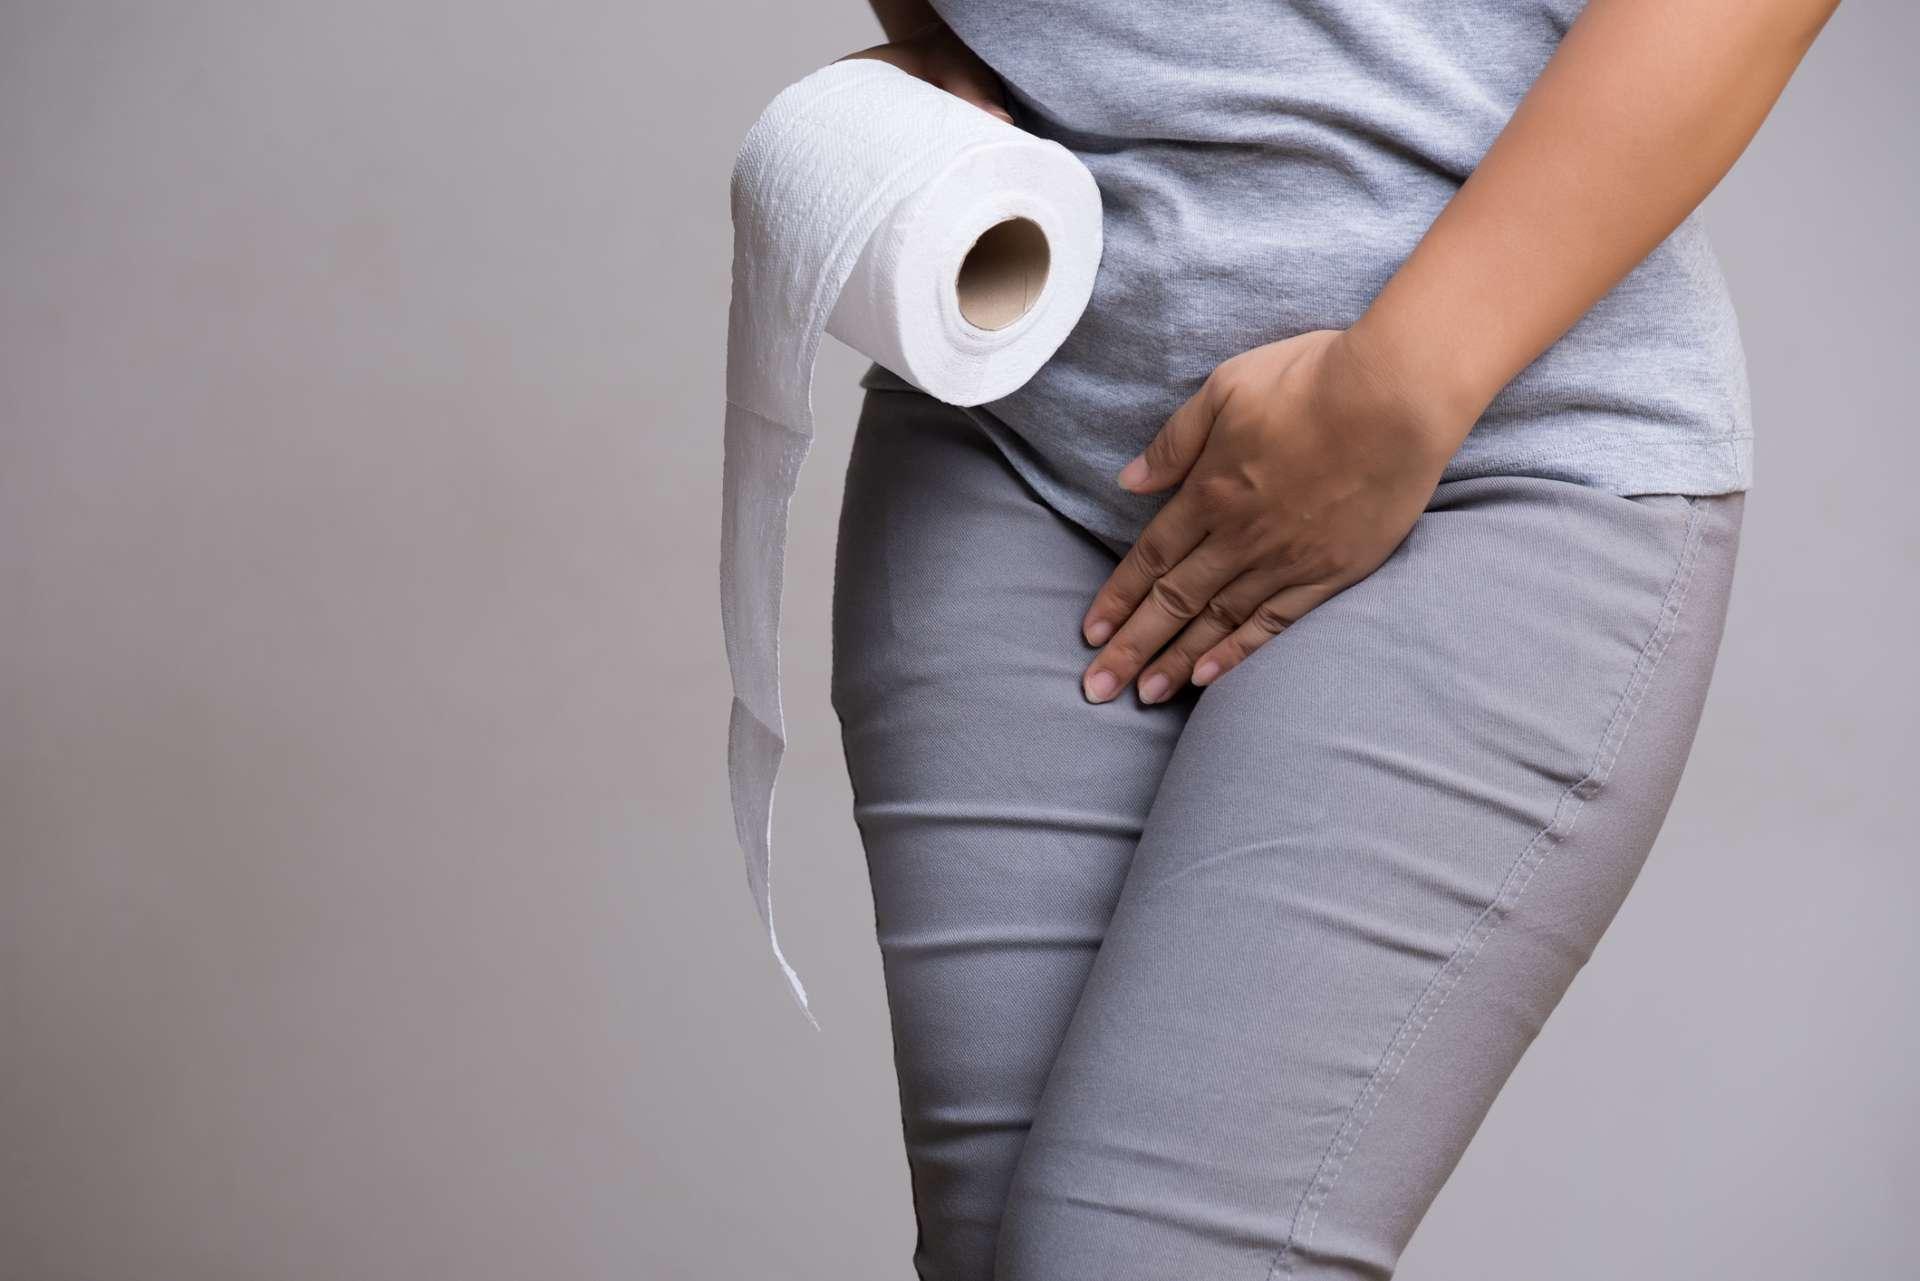 Frauenhand, die ihren Unterbauch im Schritt und Gewebe- oder Toilettenpapierrolle hält. Störung, Durchfall, Inkontinenz. Gesundheitskonzept.